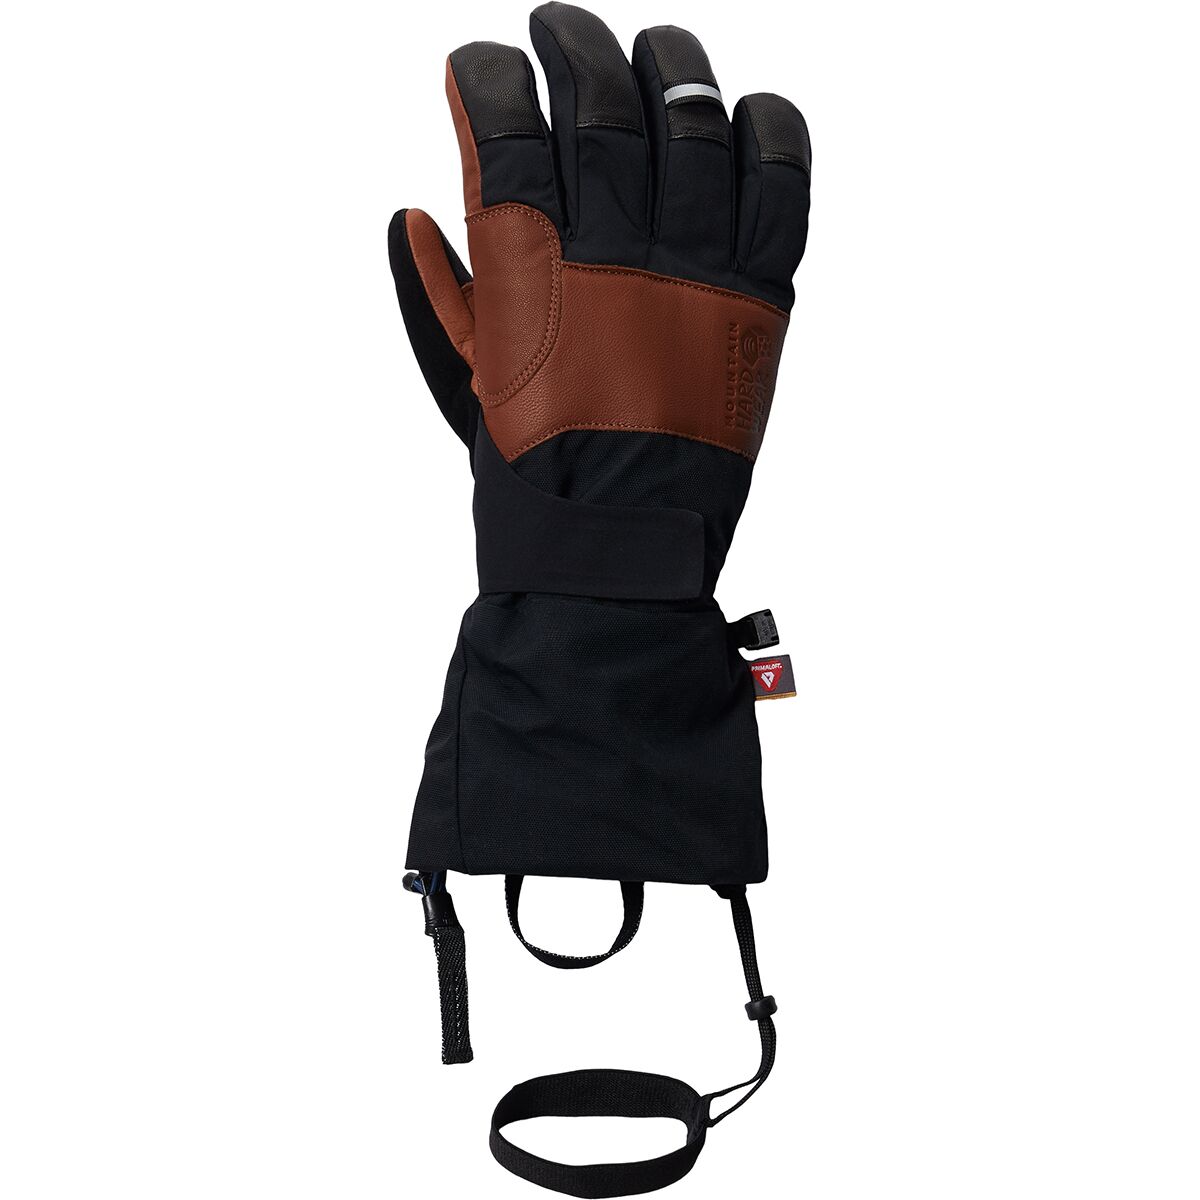 Mountain Hardwear High Exposure GORE-TEX Glove - Men's